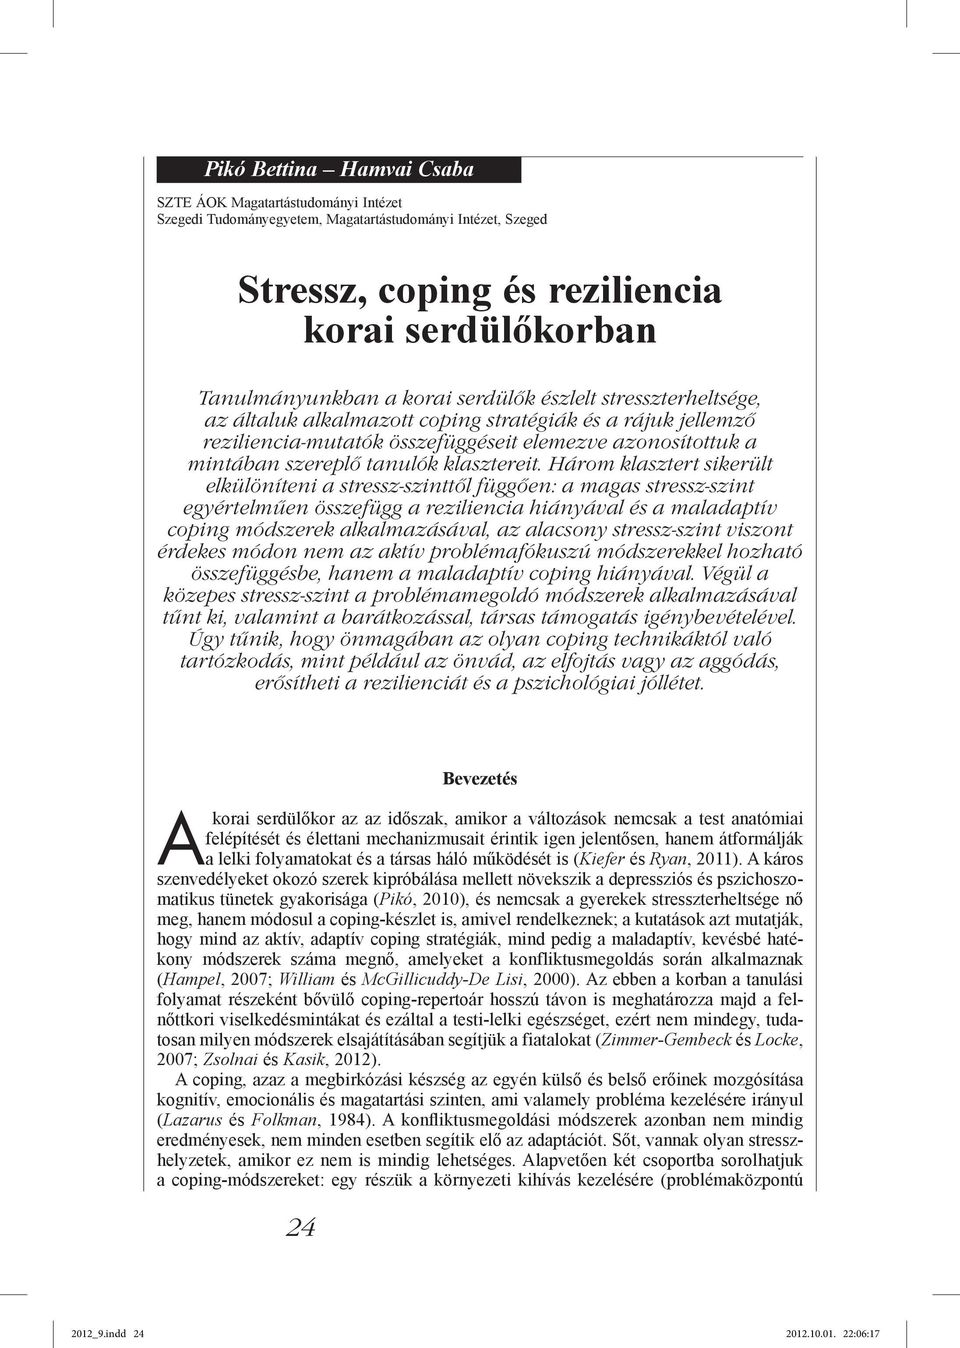 Három klasztert sikerült elkülöníteni a stressz-szinttől függően: a magas stressz-szint egyértelműen összefügg a reziliencia hiányával és a maladaptív coping módszerek alkalmazásával, az alacsony